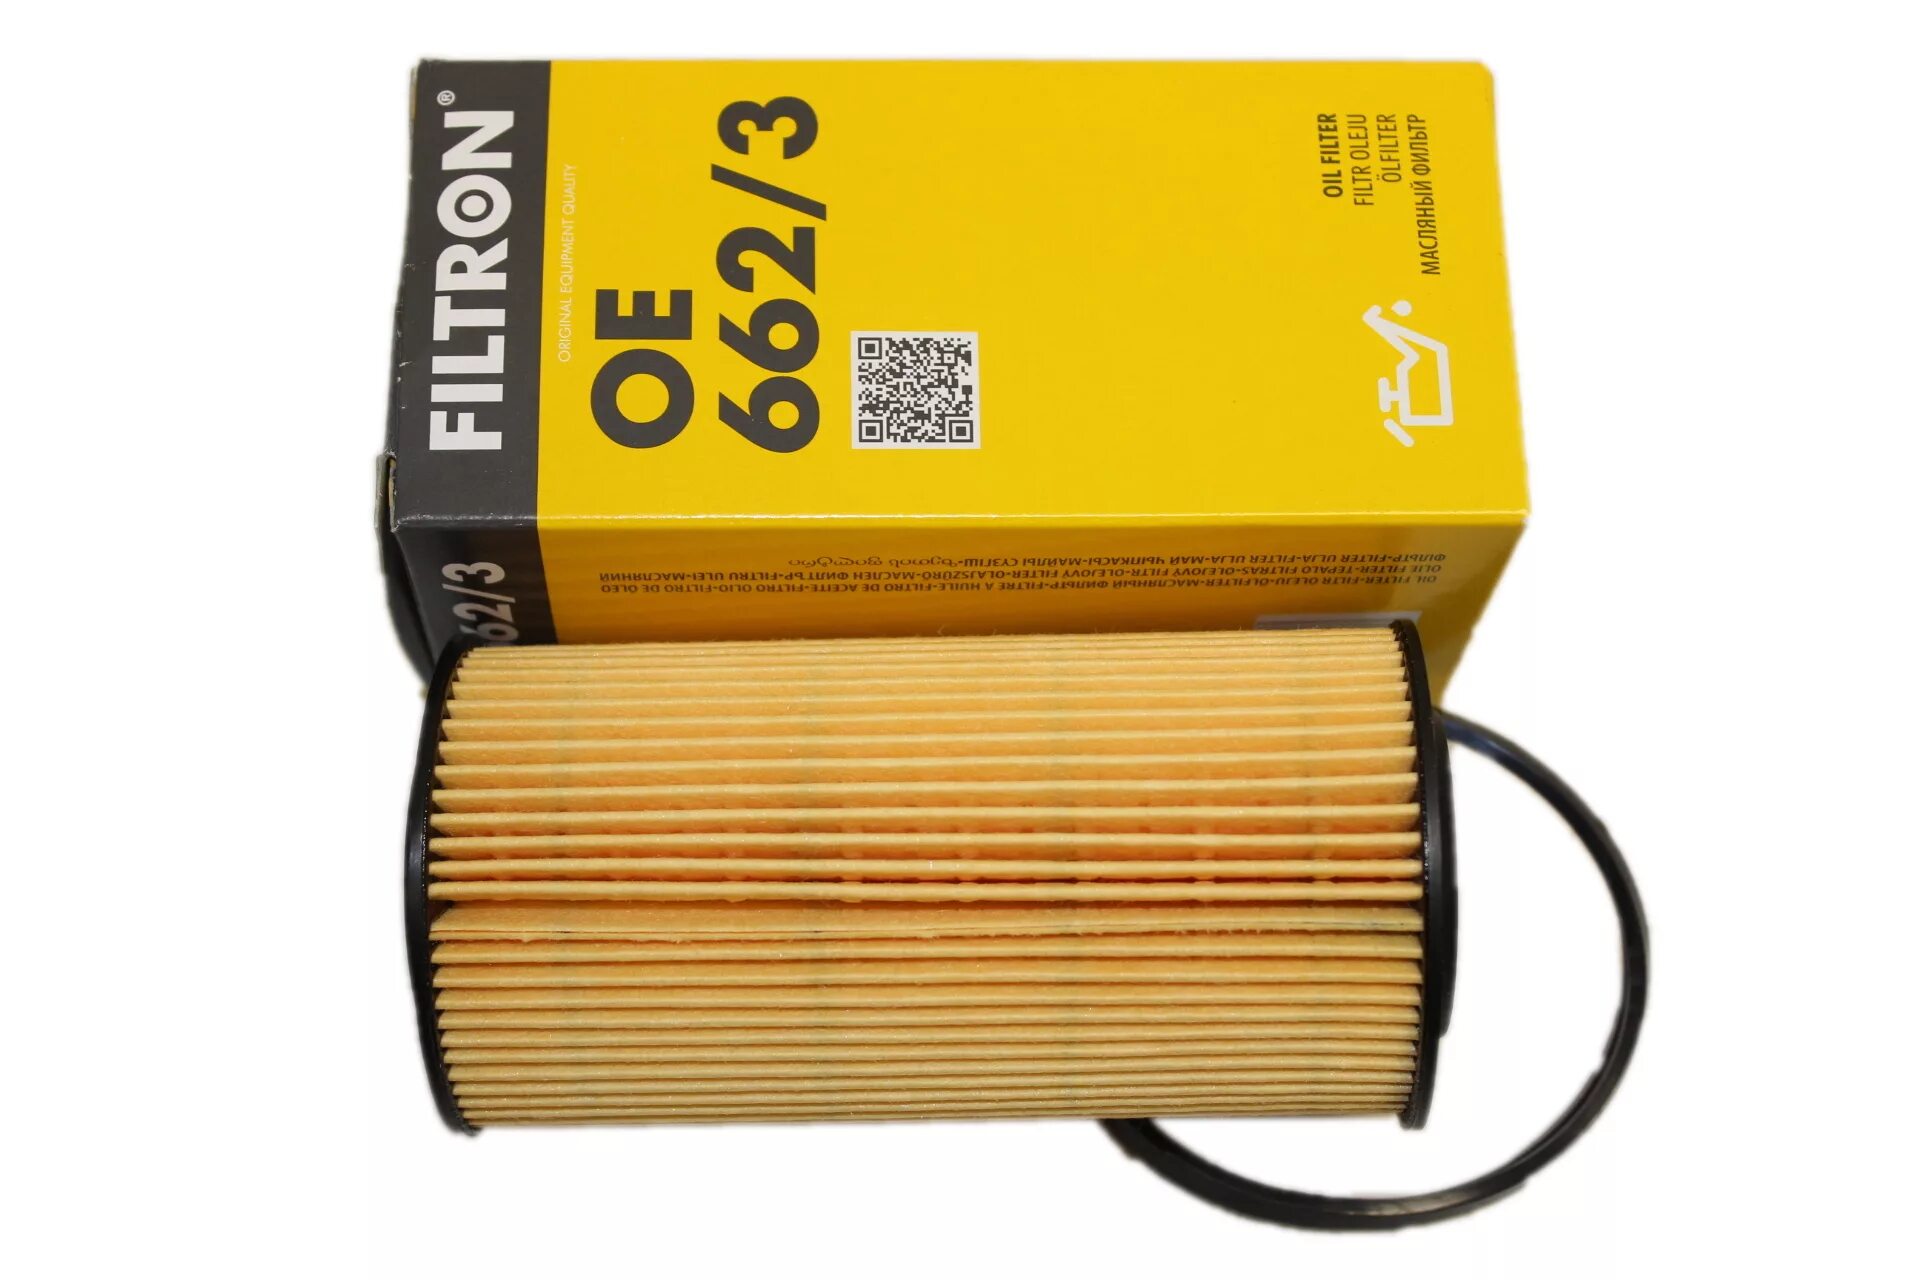 Масляный фильтр куга 2. Oe662/3 FILTRON. FILTRON oe662. Масляный фильтр Форд Куга 2.5. Форд Транзит фильтр масляный Фильтрон.